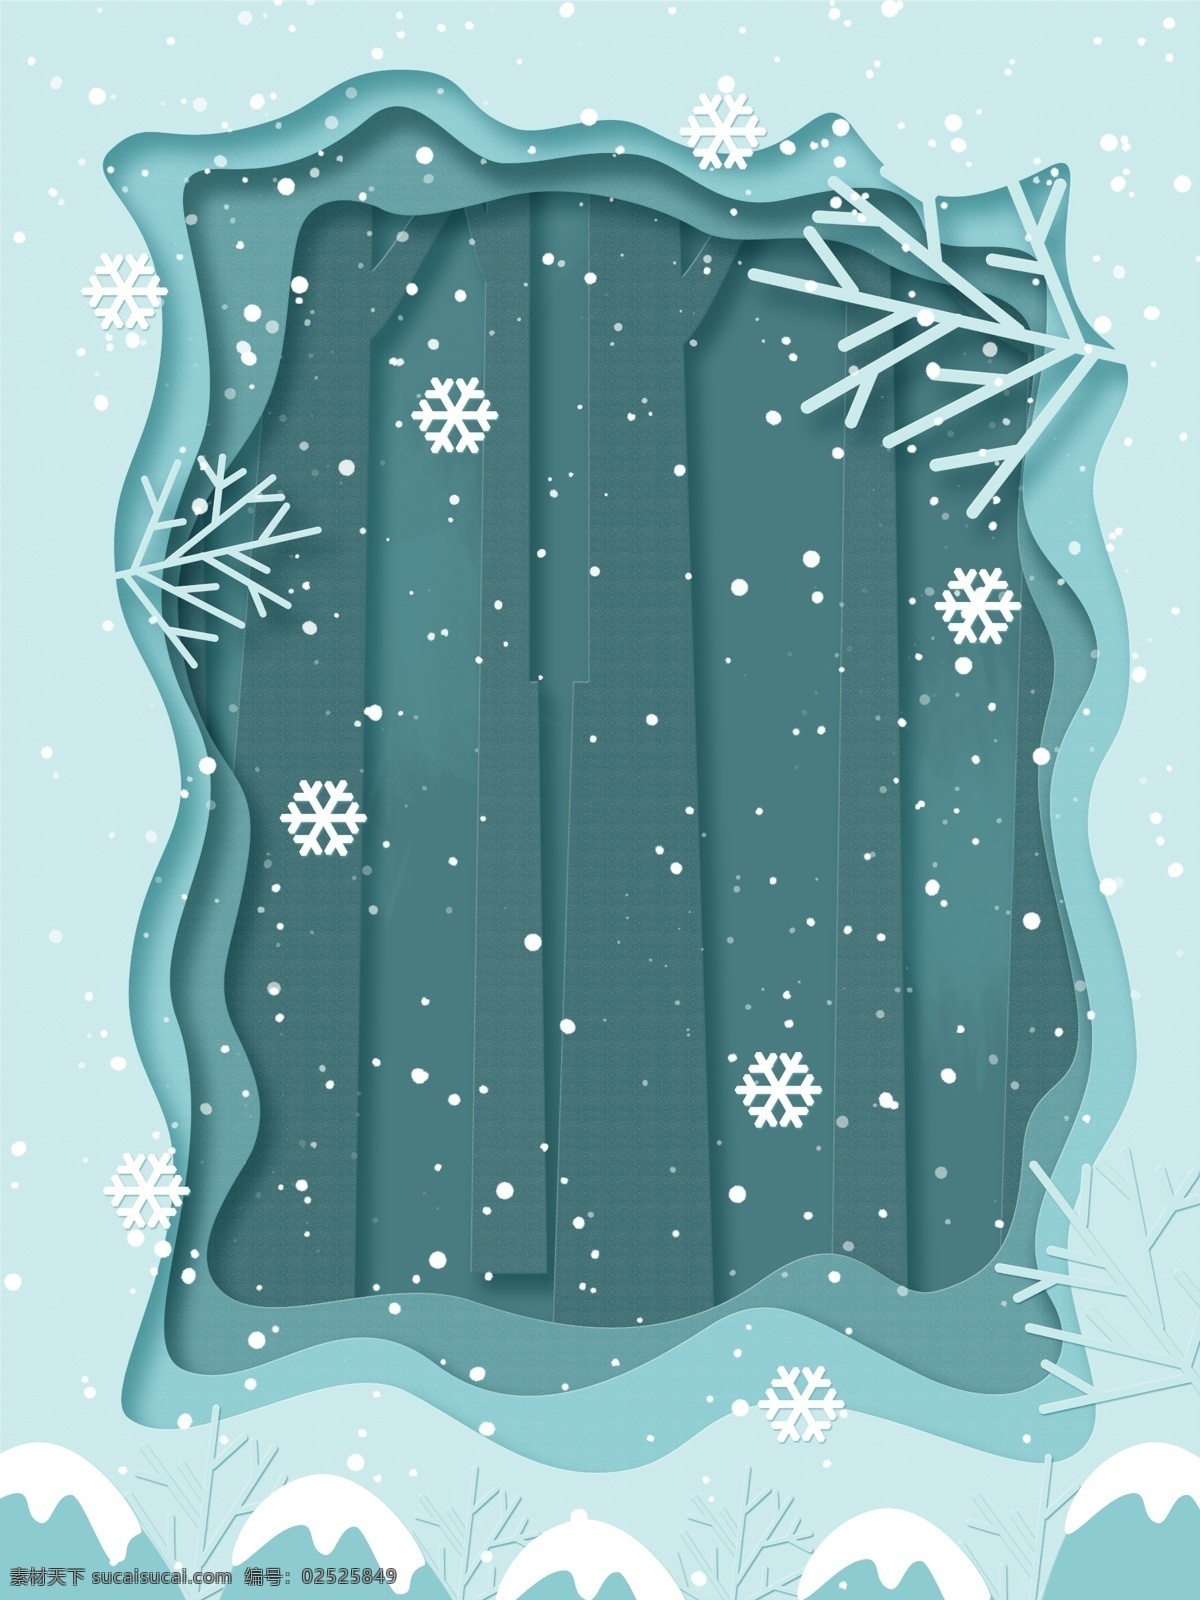 传统 冬季 节气 雪景 背景 雪花 冬至素材 冬至快乐 冬至来了 冬至节 冬至背景 蓝色背景